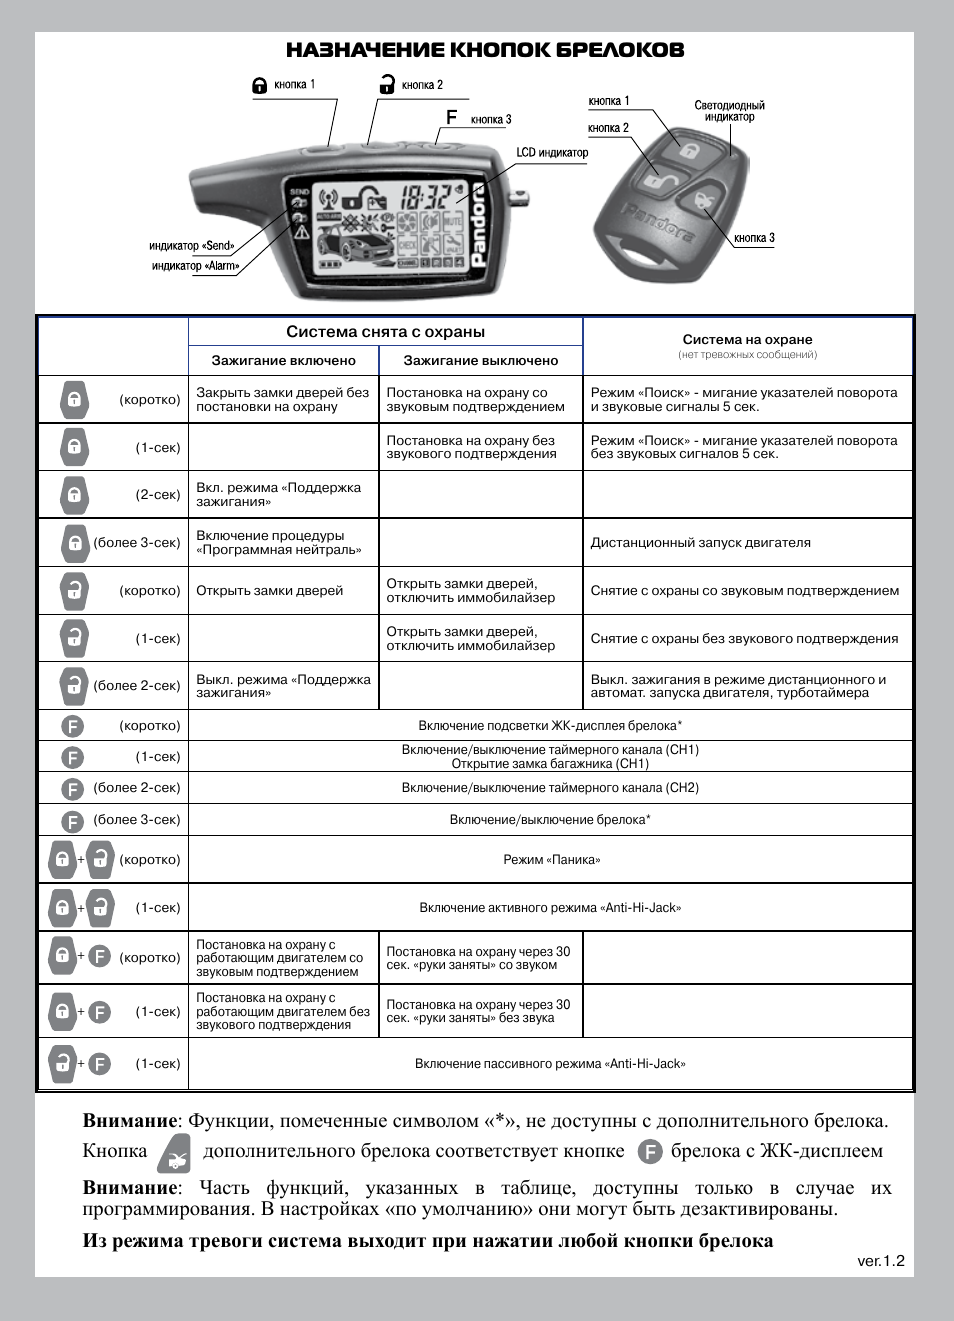 Сигнализация пандора установка, описание, инструкция по эксплуатации